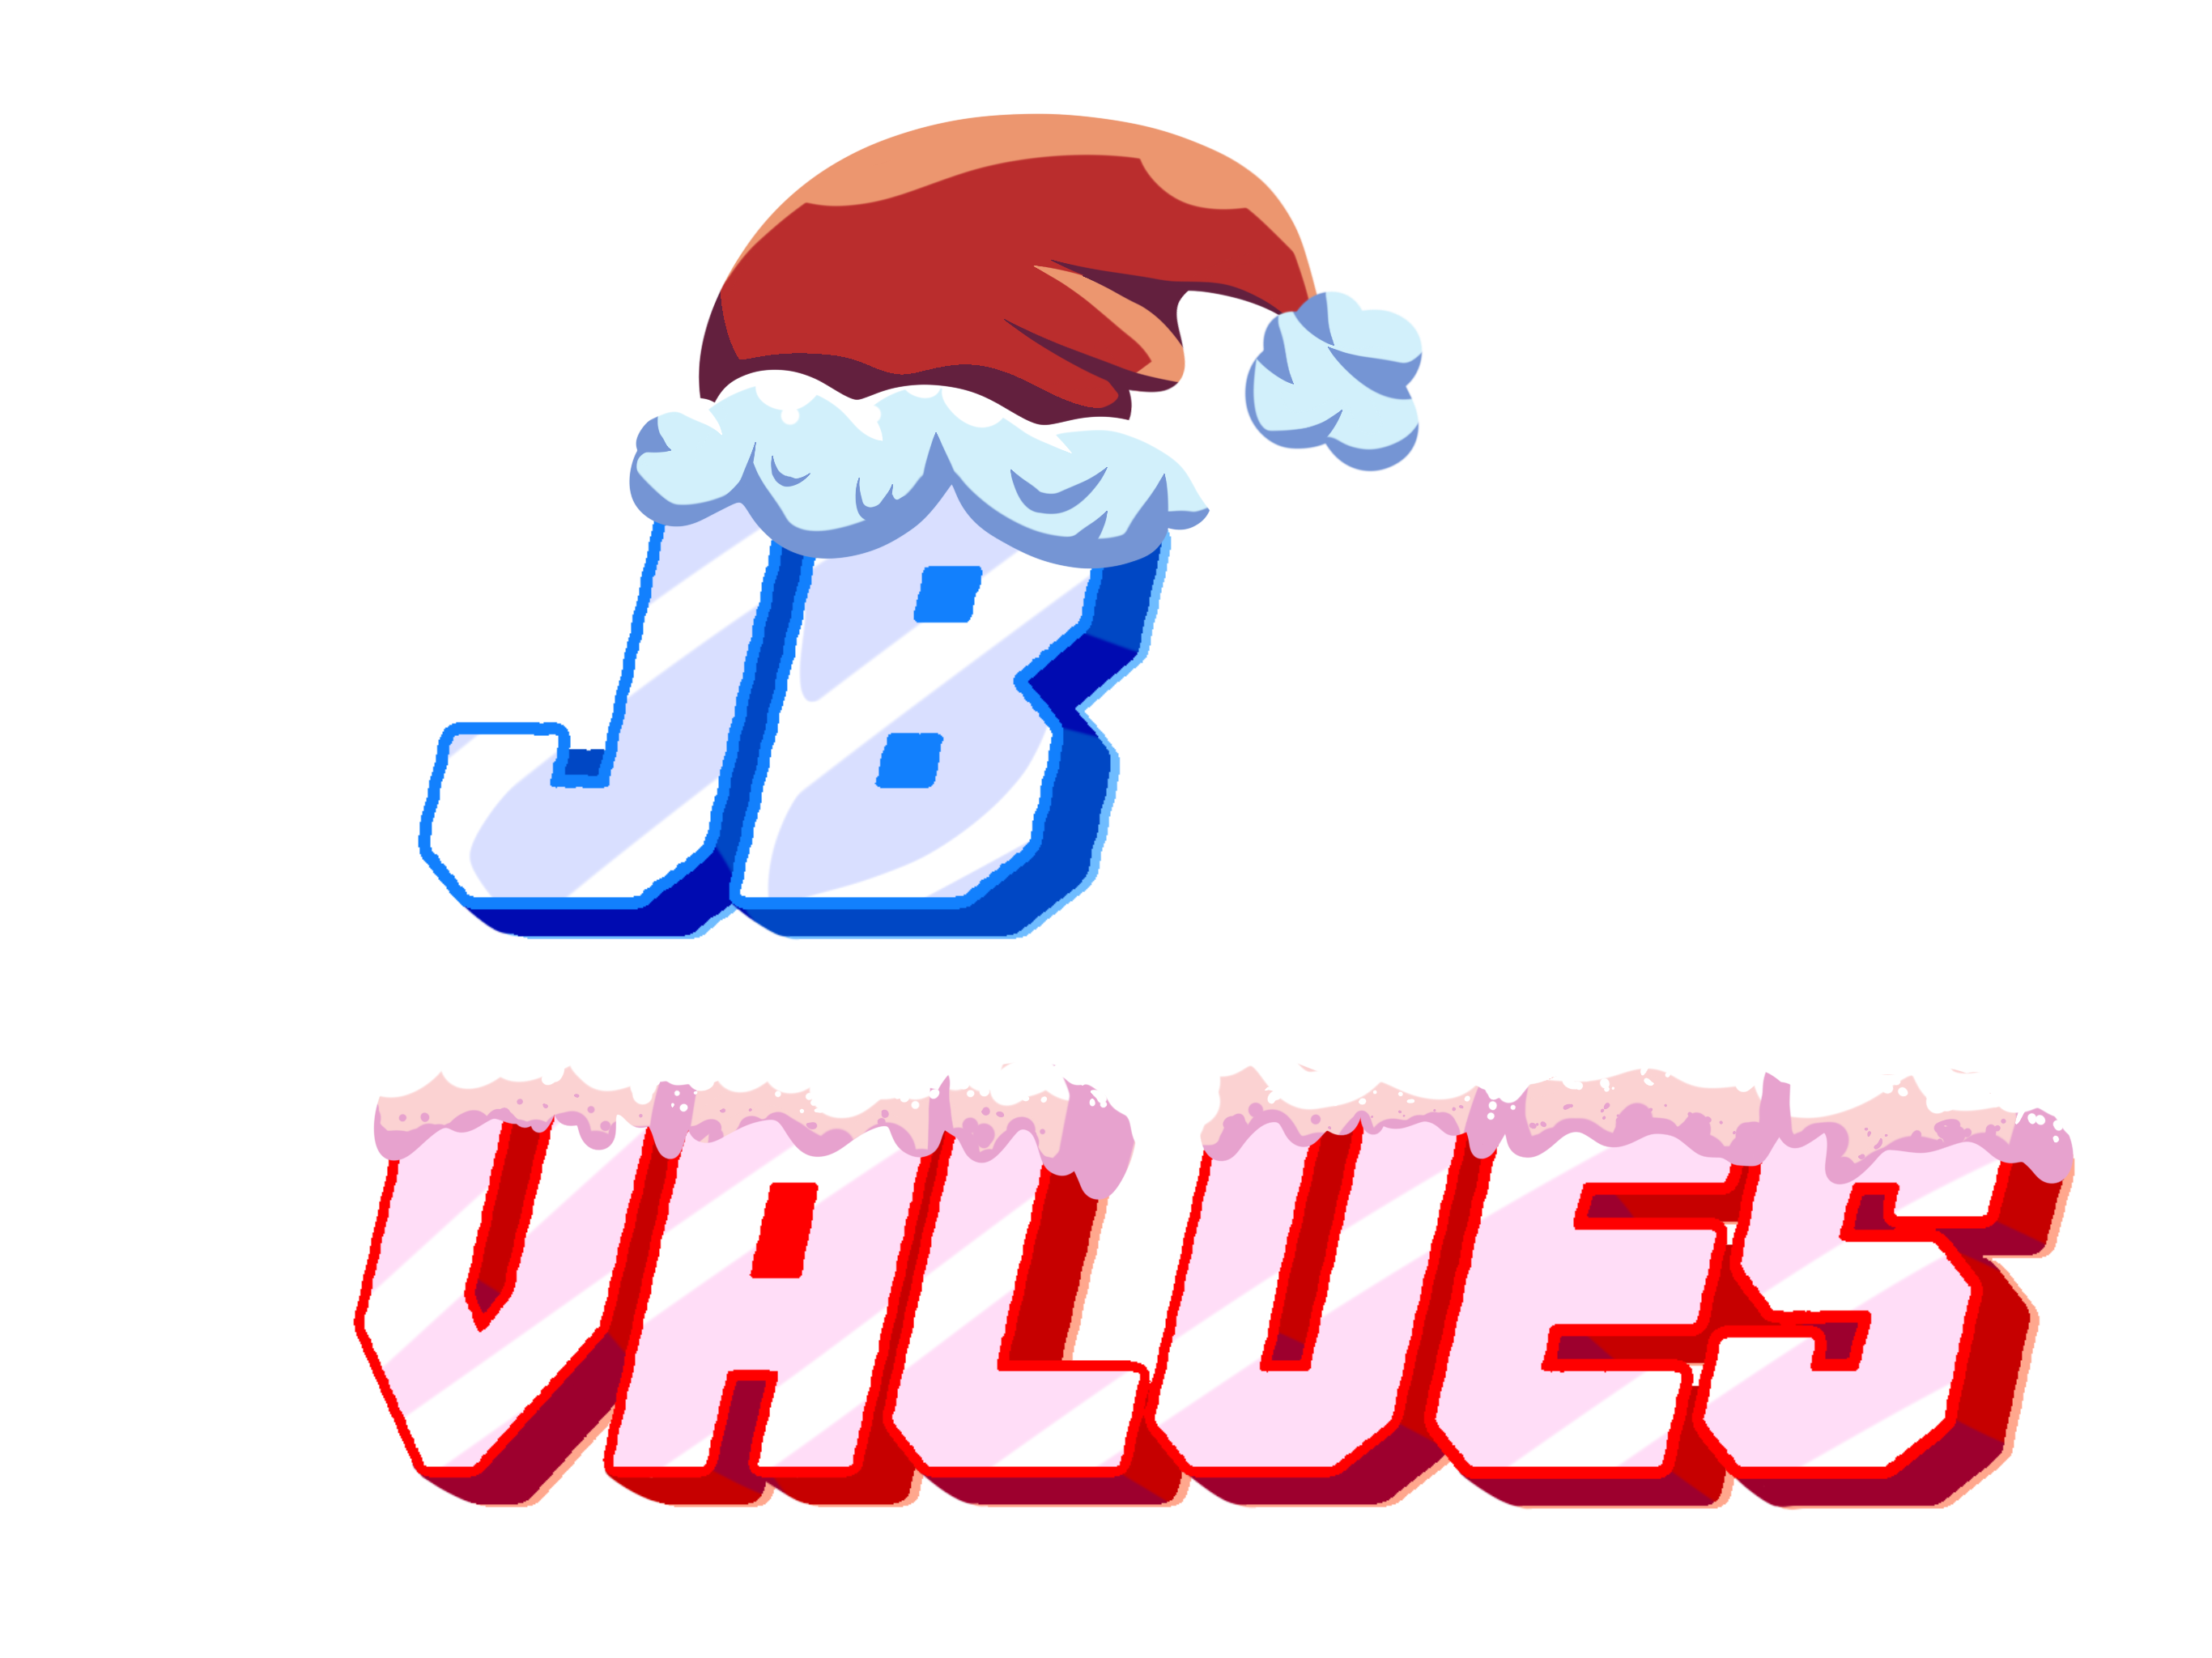 JB Values - Roblox Jailbreak Trading